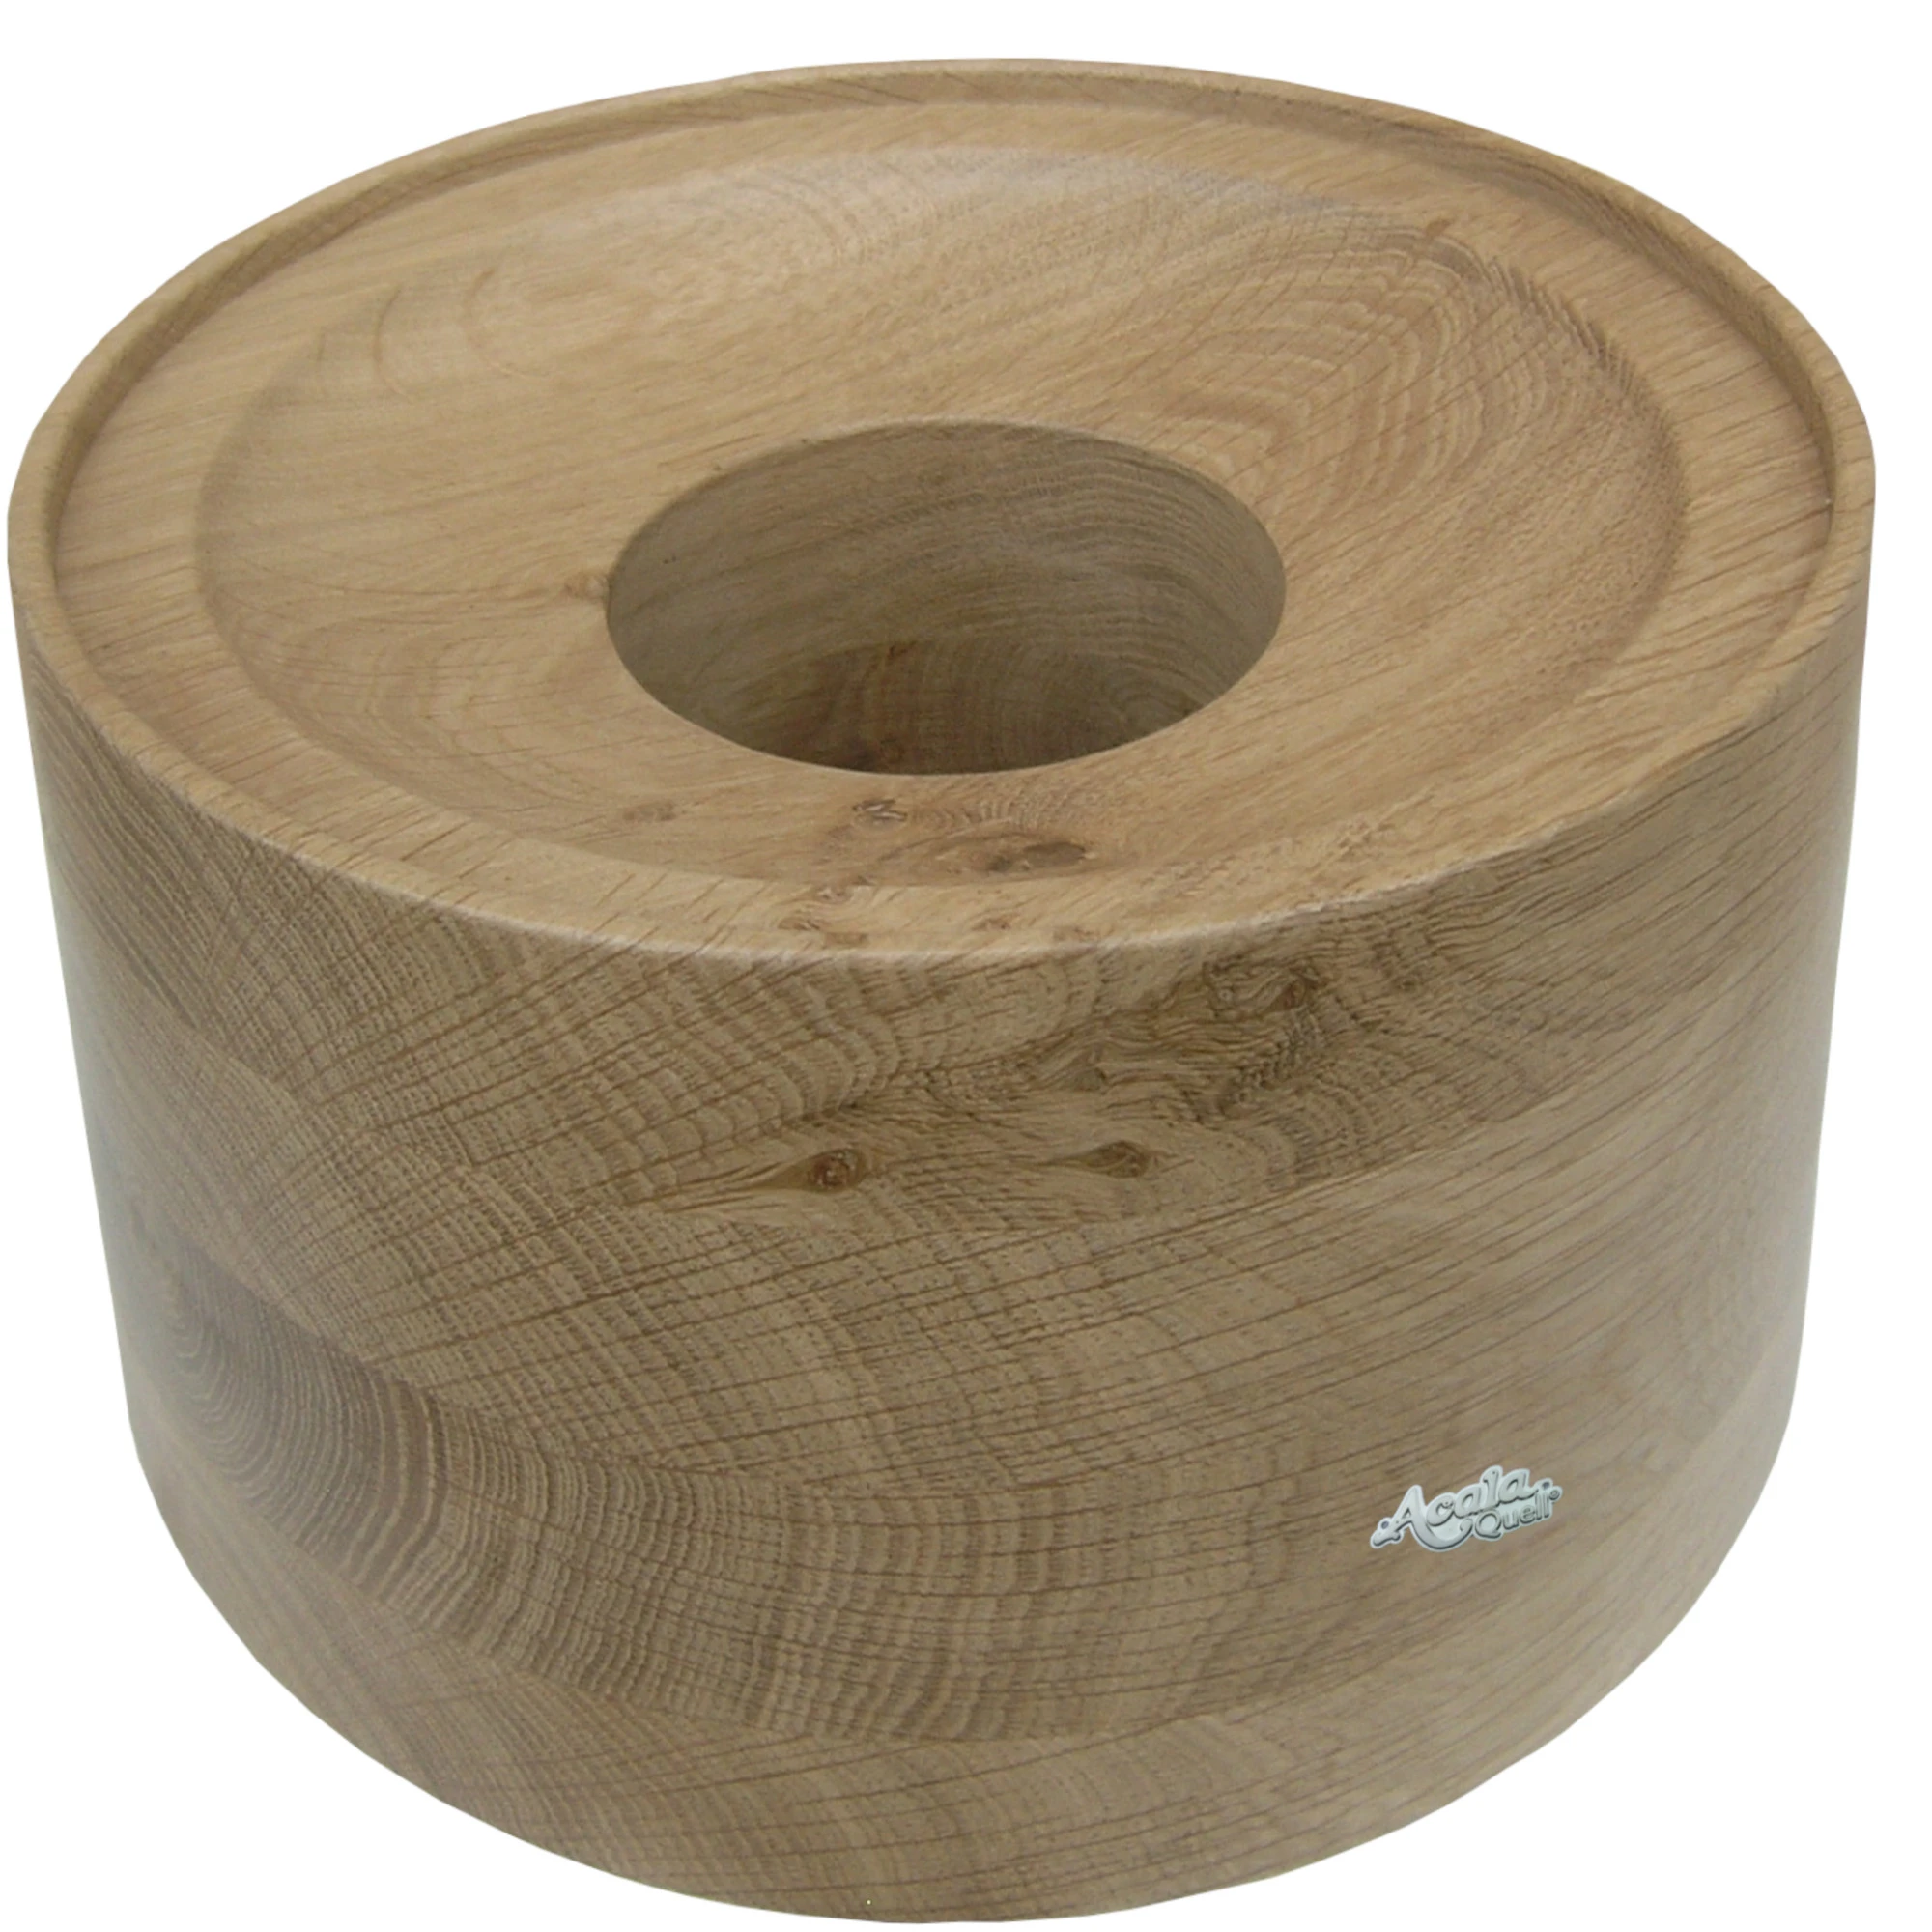 Zu sehen ist ein Sockel für den Acala Wasserfilter Smart aus wunderschönem Eiche Echtholz vor weißem Hintergrund. Auf dem Sockel befindet sich ein schlichtes, kleines, silbernes Acala Logo.